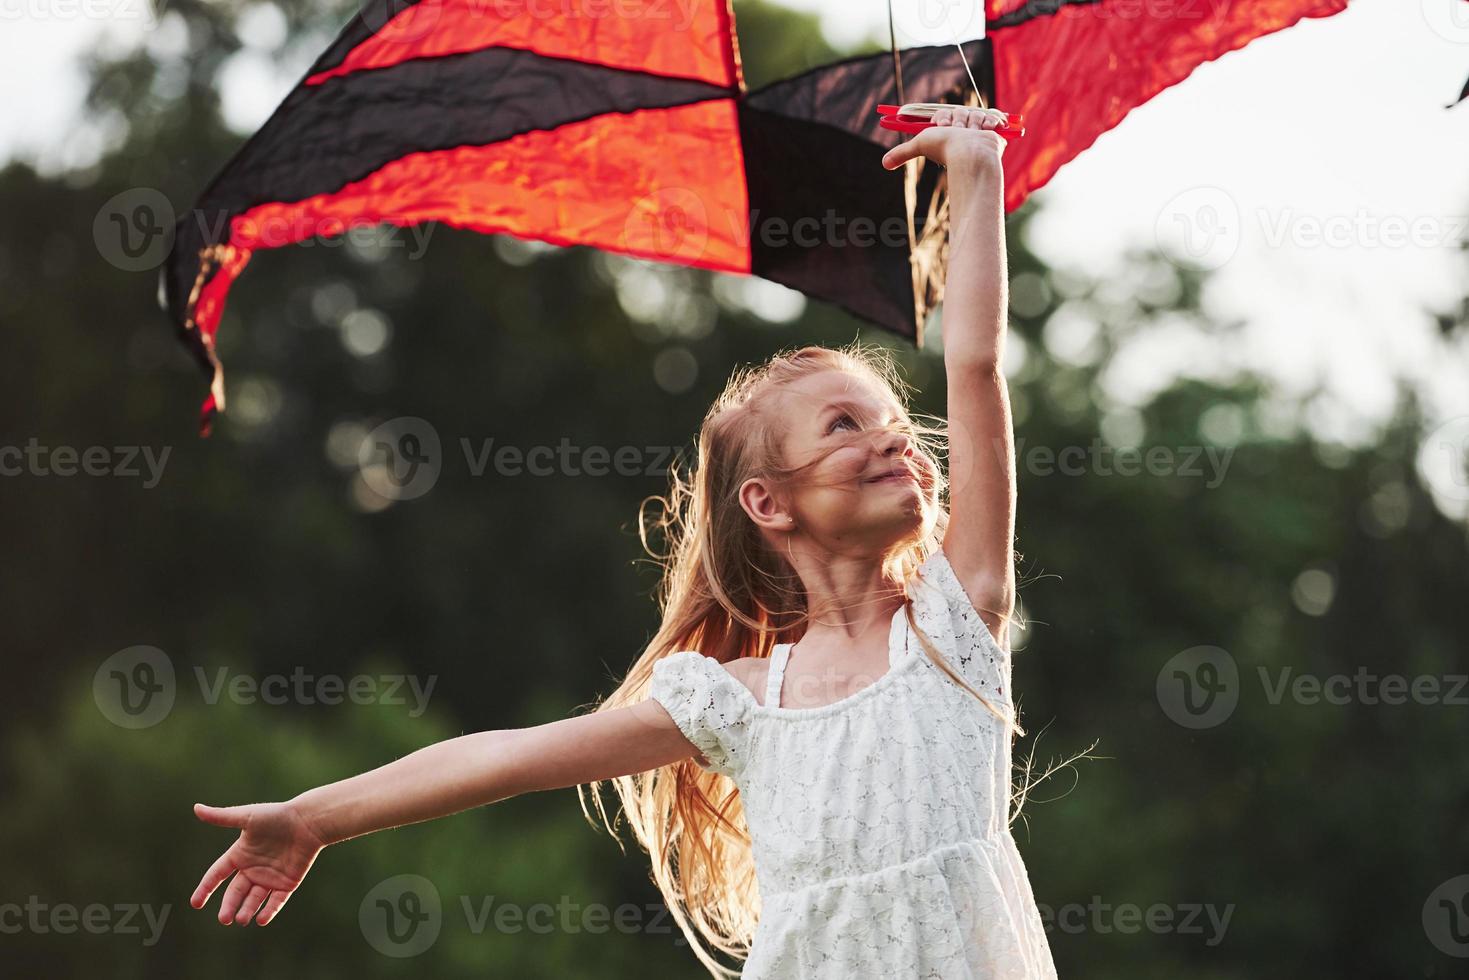 goede wind. gelukkig meisje in witte kleren veel plezier met vlieger in het veld. prachtige natuur foto